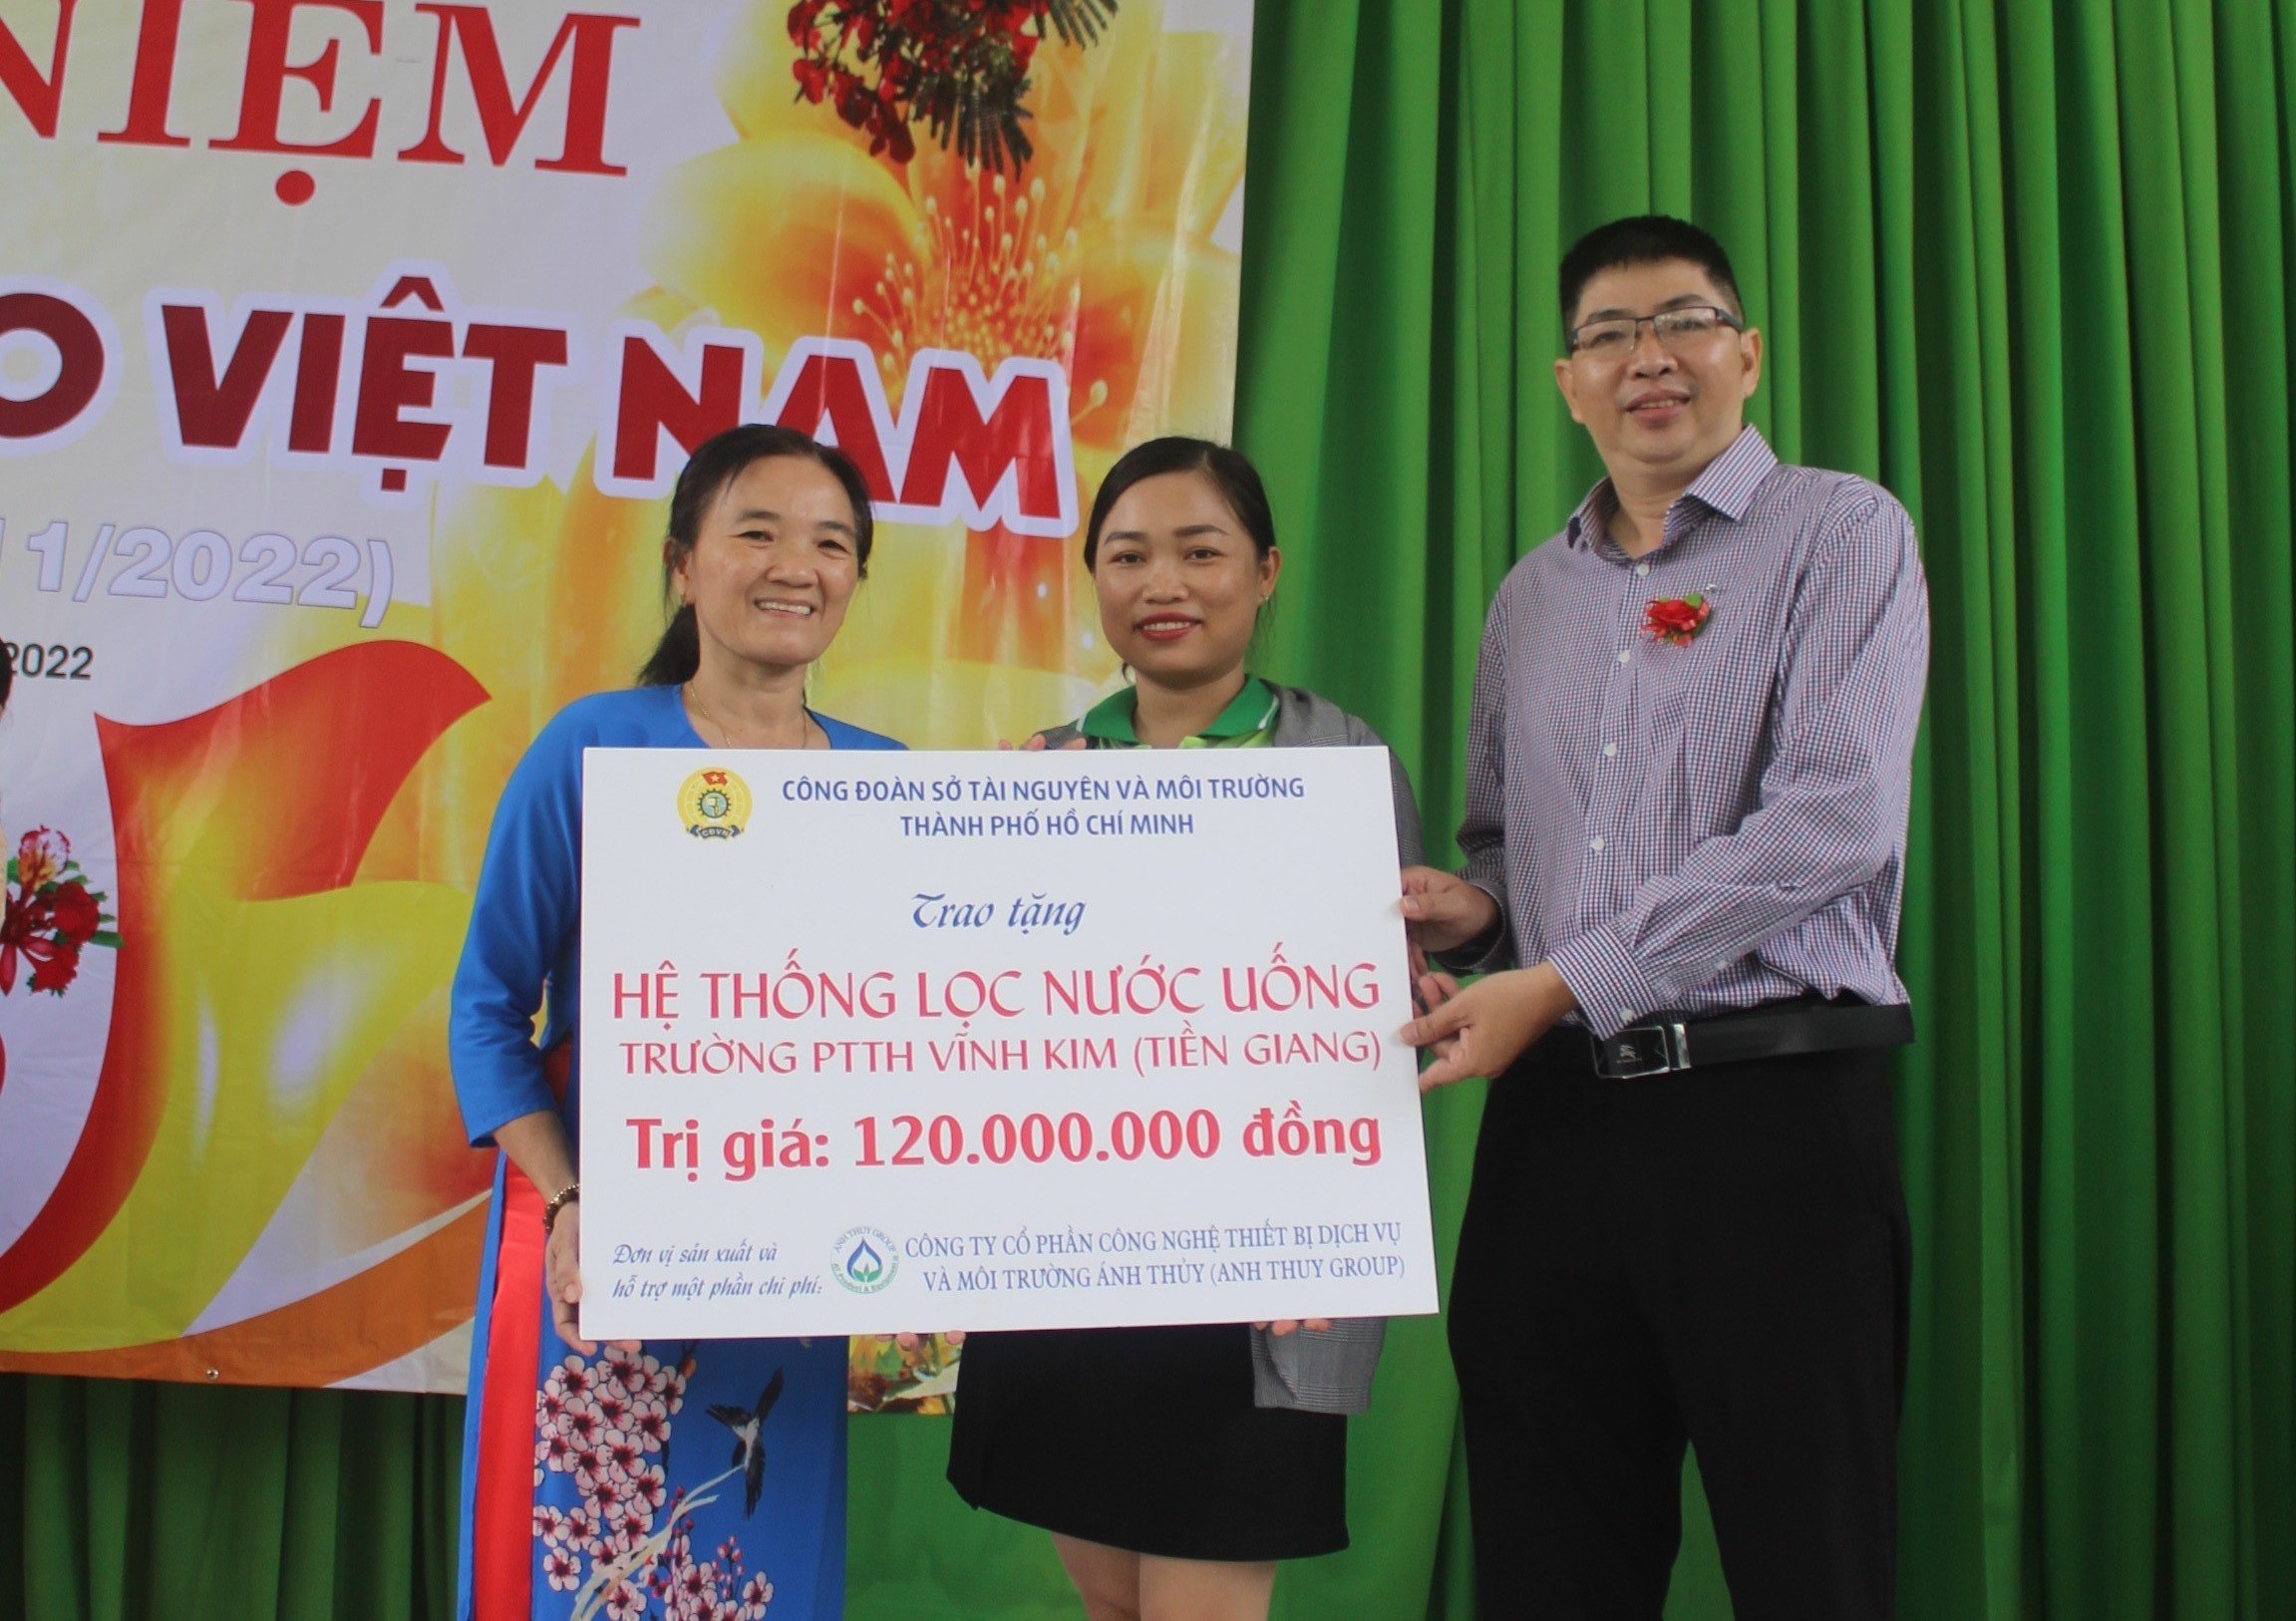 ANHTHUYGROUP - Lễ trao tặng máy lọc nước R.O tại Trường THPT Vĩnh Kim (Tiền Giang)